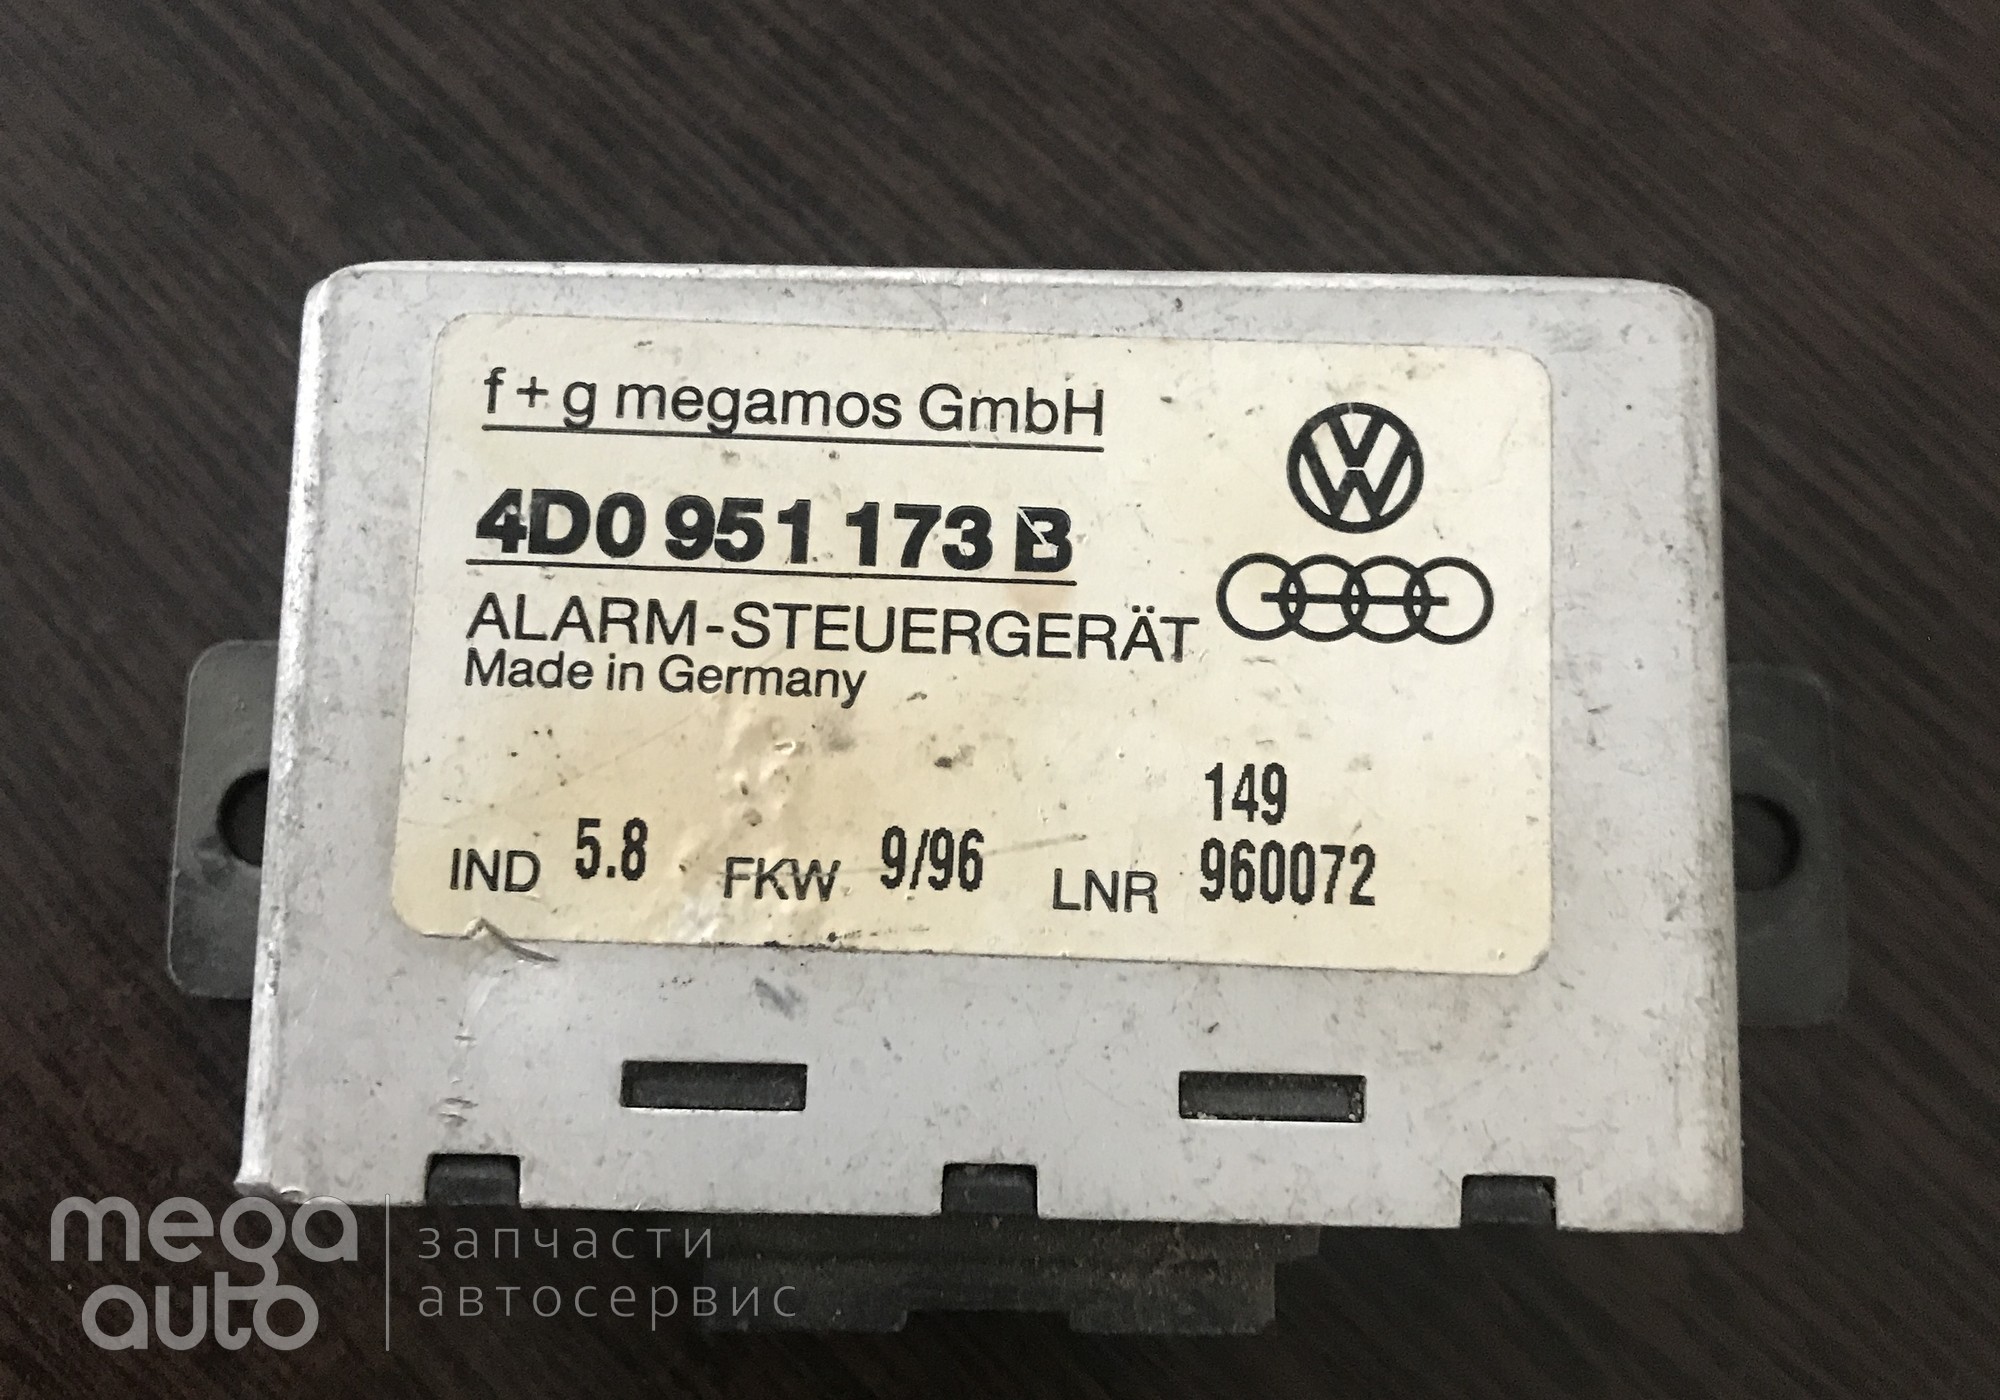 4D0951173B Блок управления штатной сигнализации ауди а 8 для Audi A8 D2 (с 1994 по 2002)